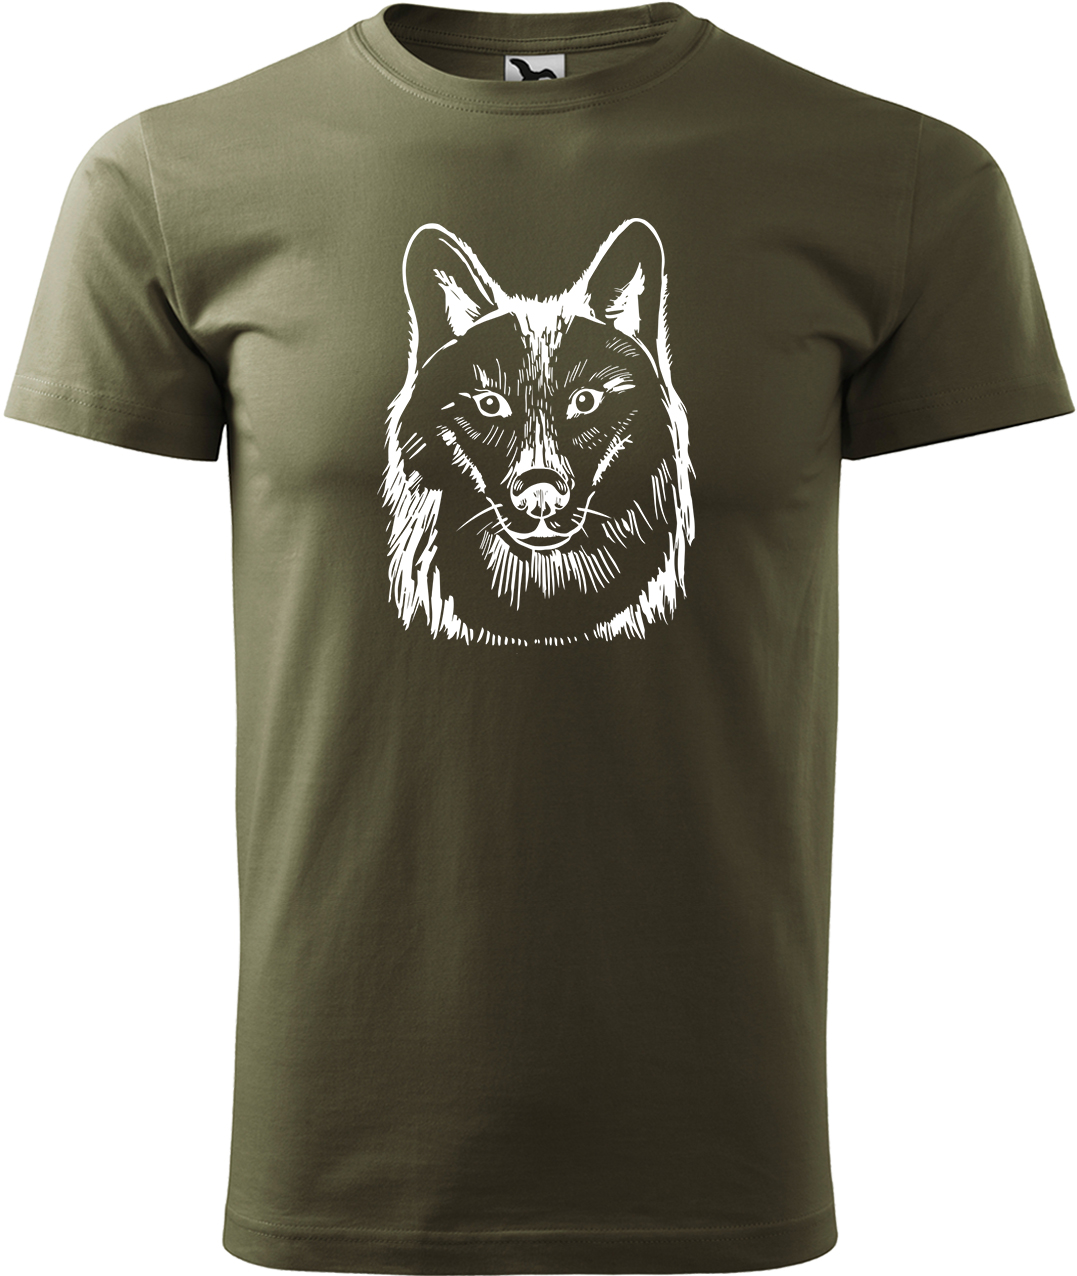 Pánské tričko s vlkem - Kresba vlka Velikost: S, Barva: Military (69), Střih: pánský